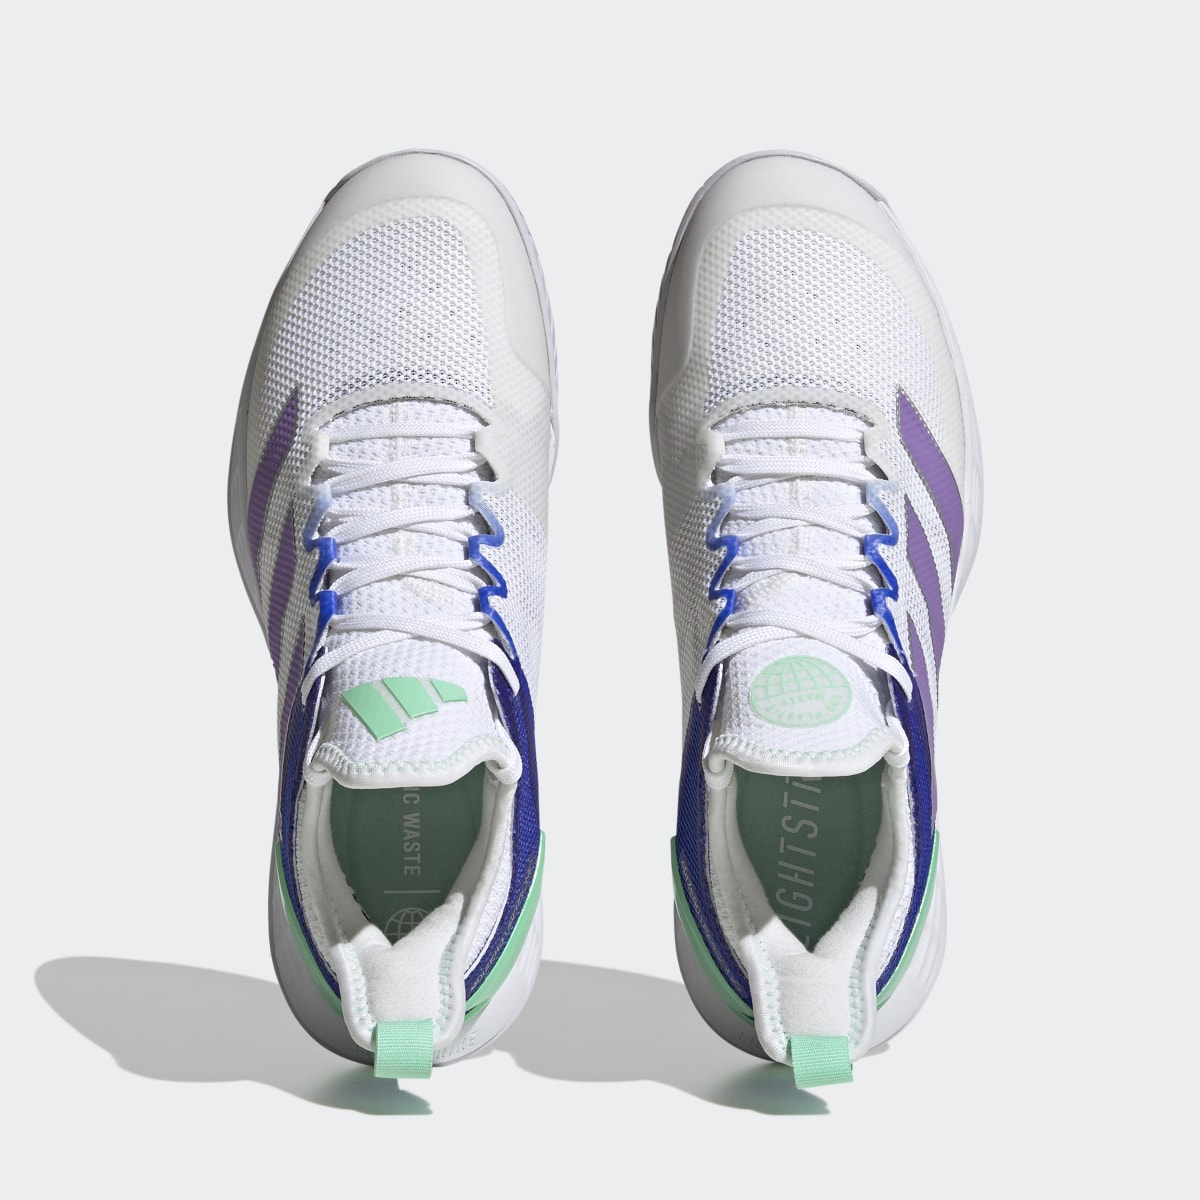 Adidas adizero Ubersonic 4 Tennis Shoes. 6